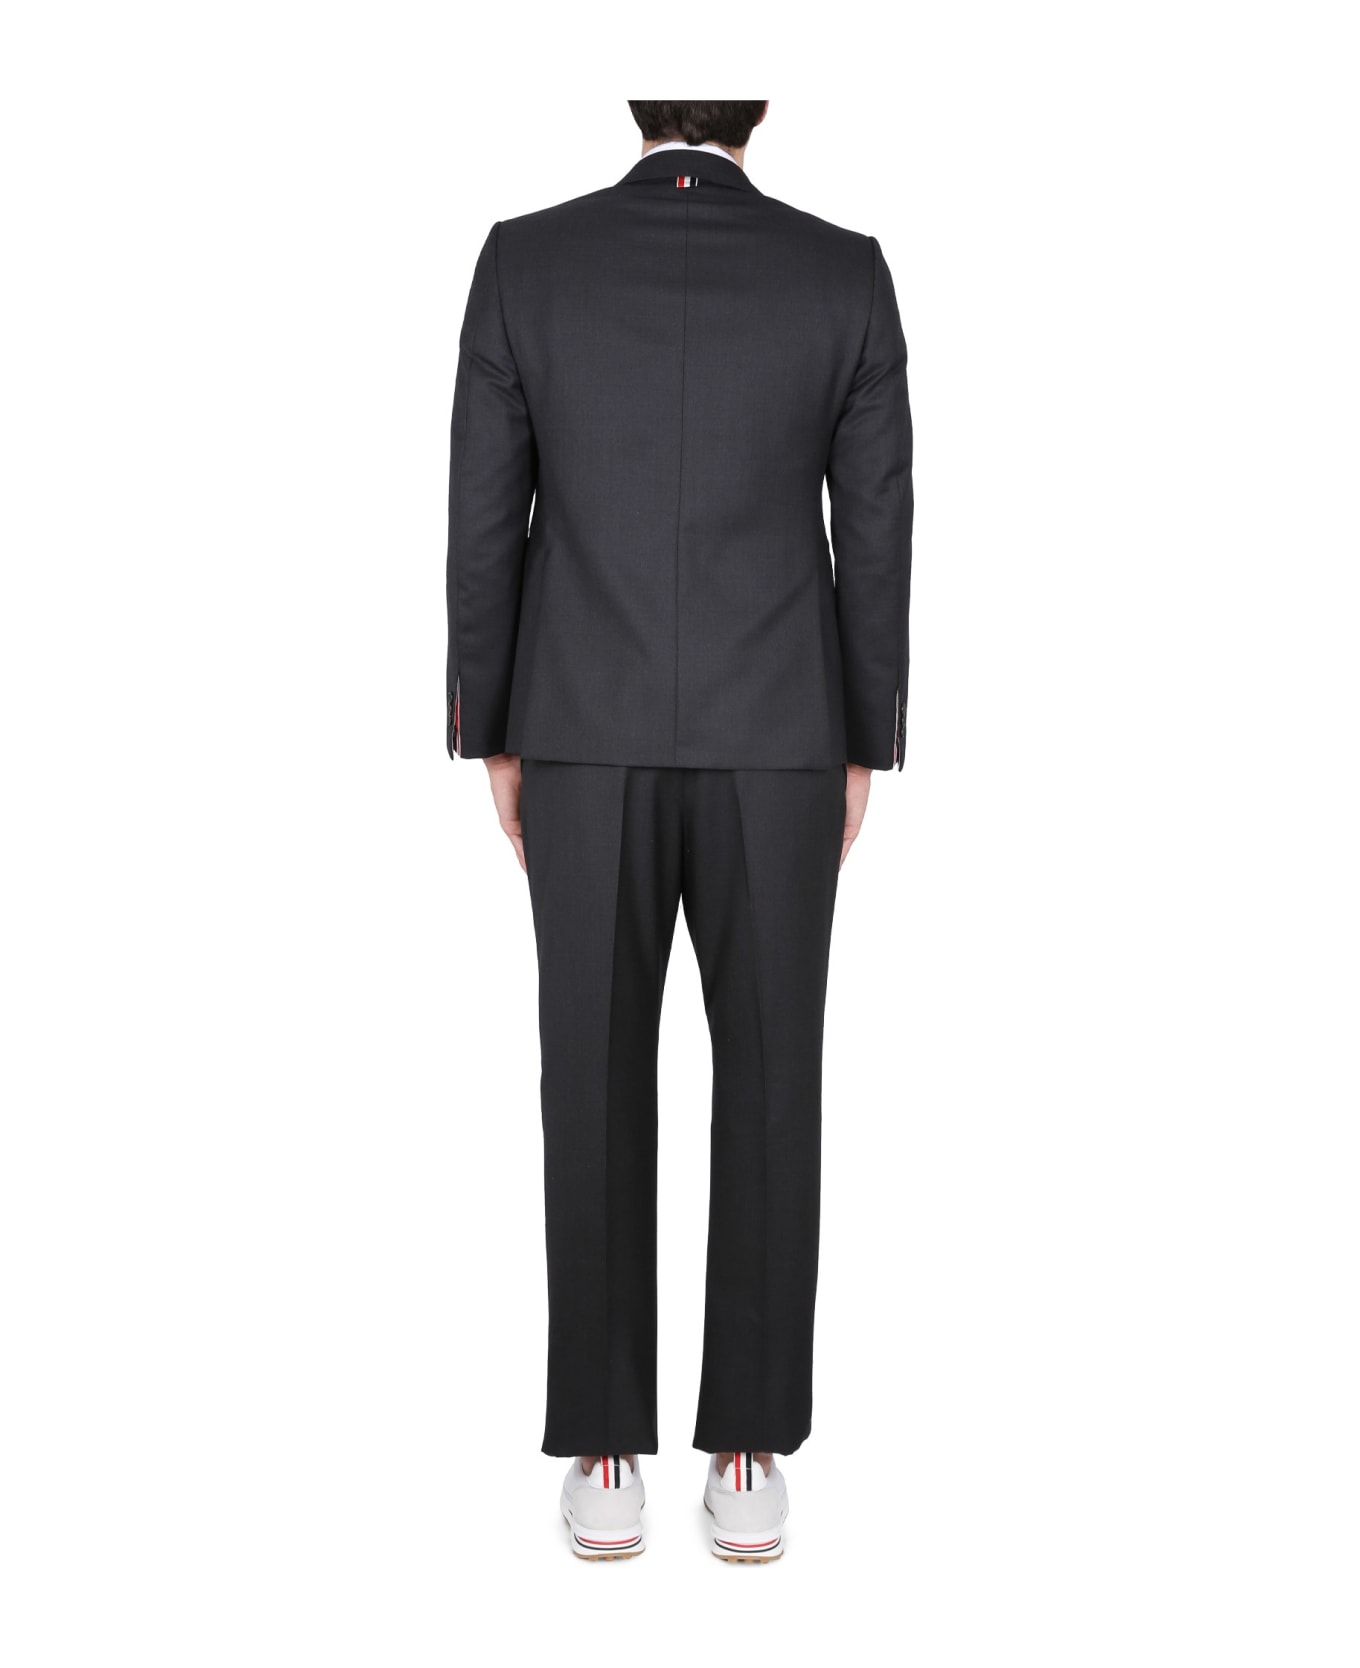 Thom Browne Classic Suit - GRIGIO